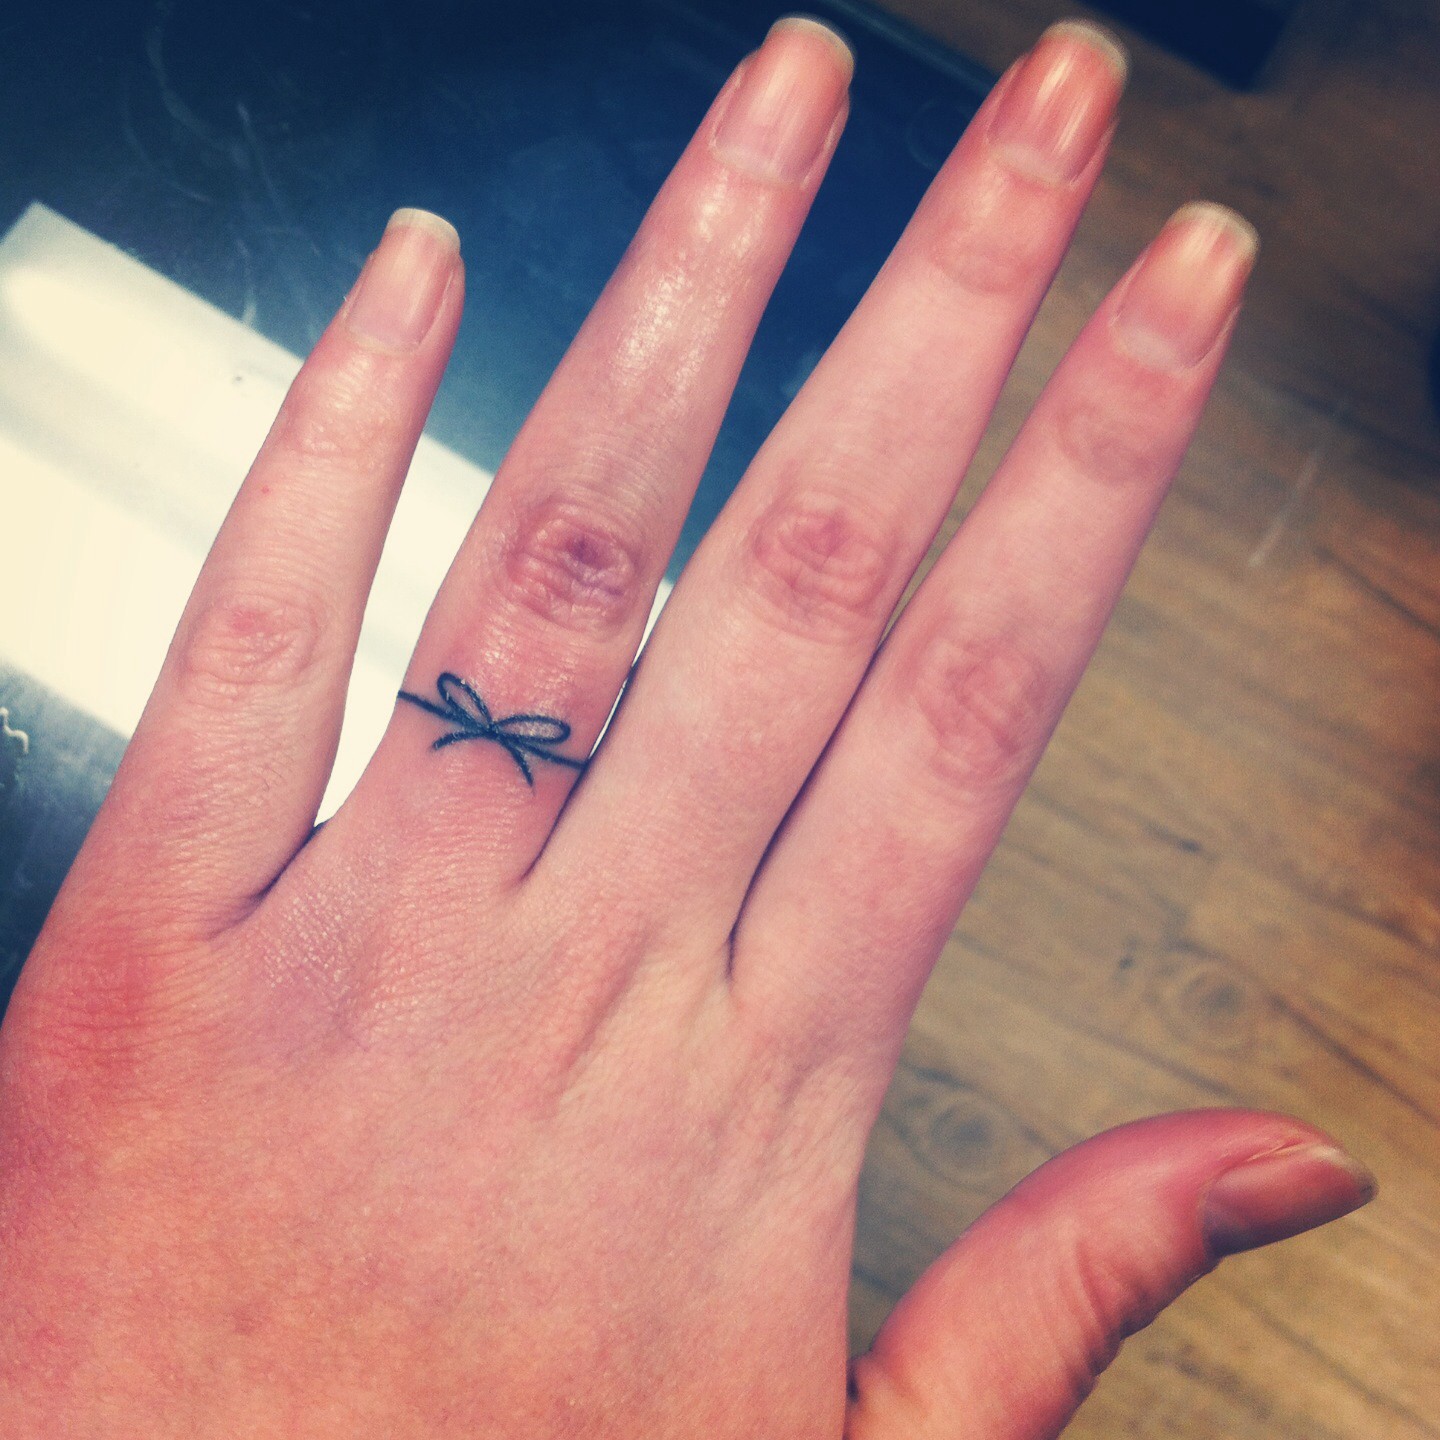 Black Thread Bow Ring Tattoo On Finger For Girls